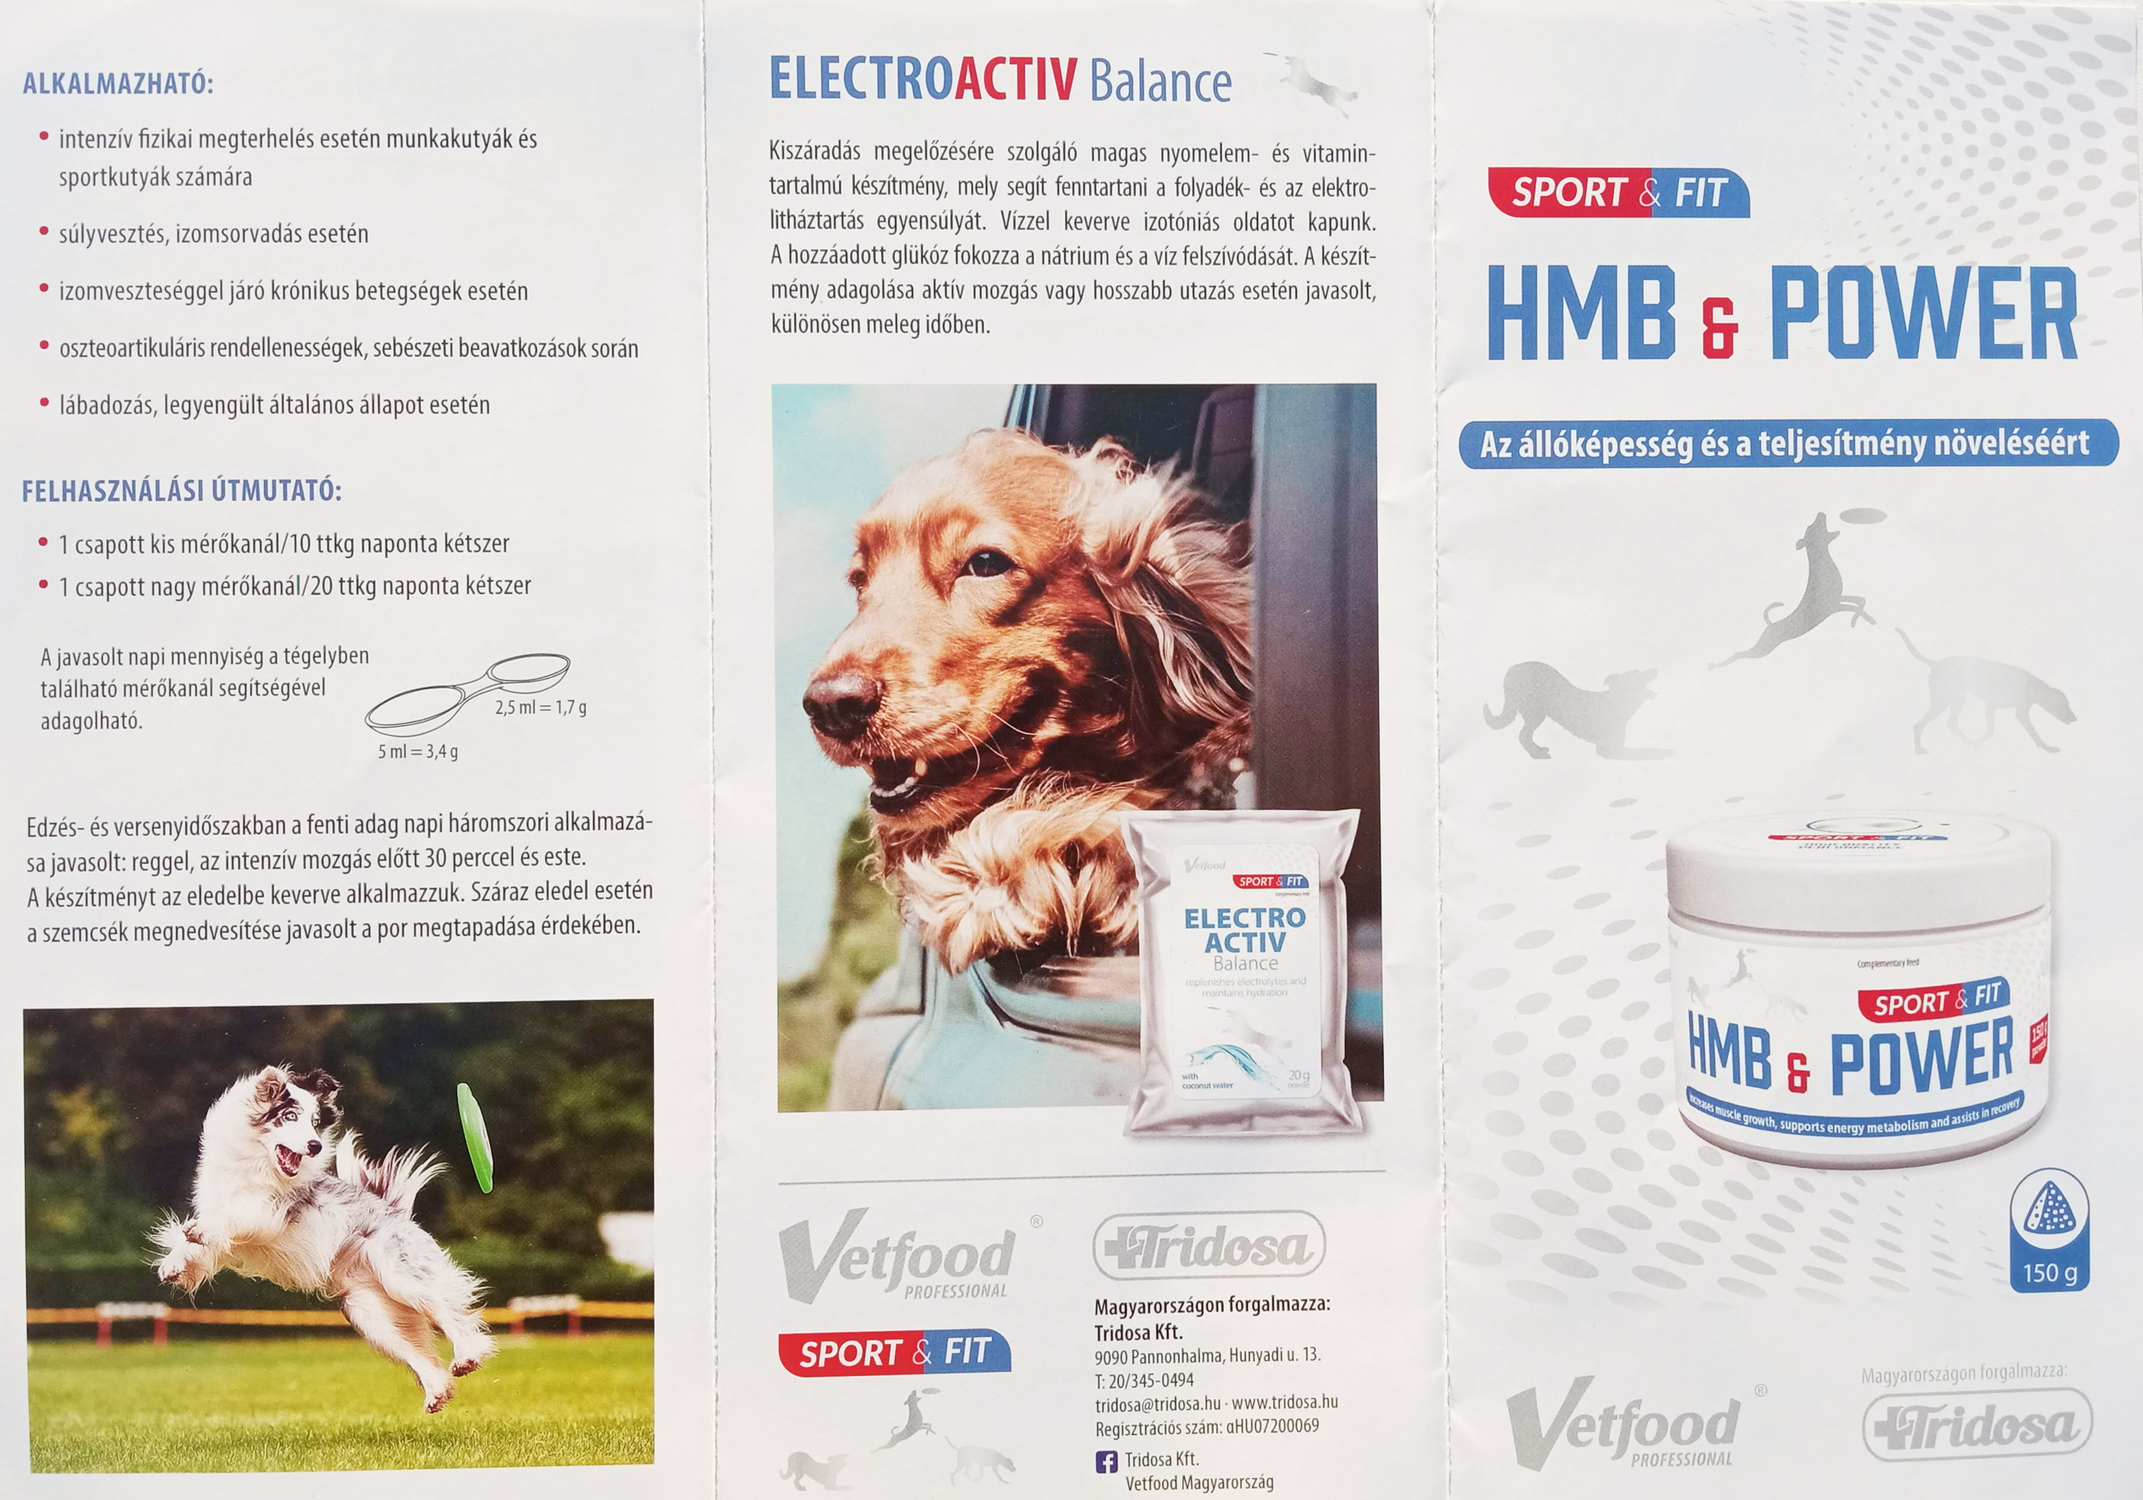 VetFood ElectroActiv Balance - Pentru menținerea echilibrului electrolitic la câini și pisici - zoom